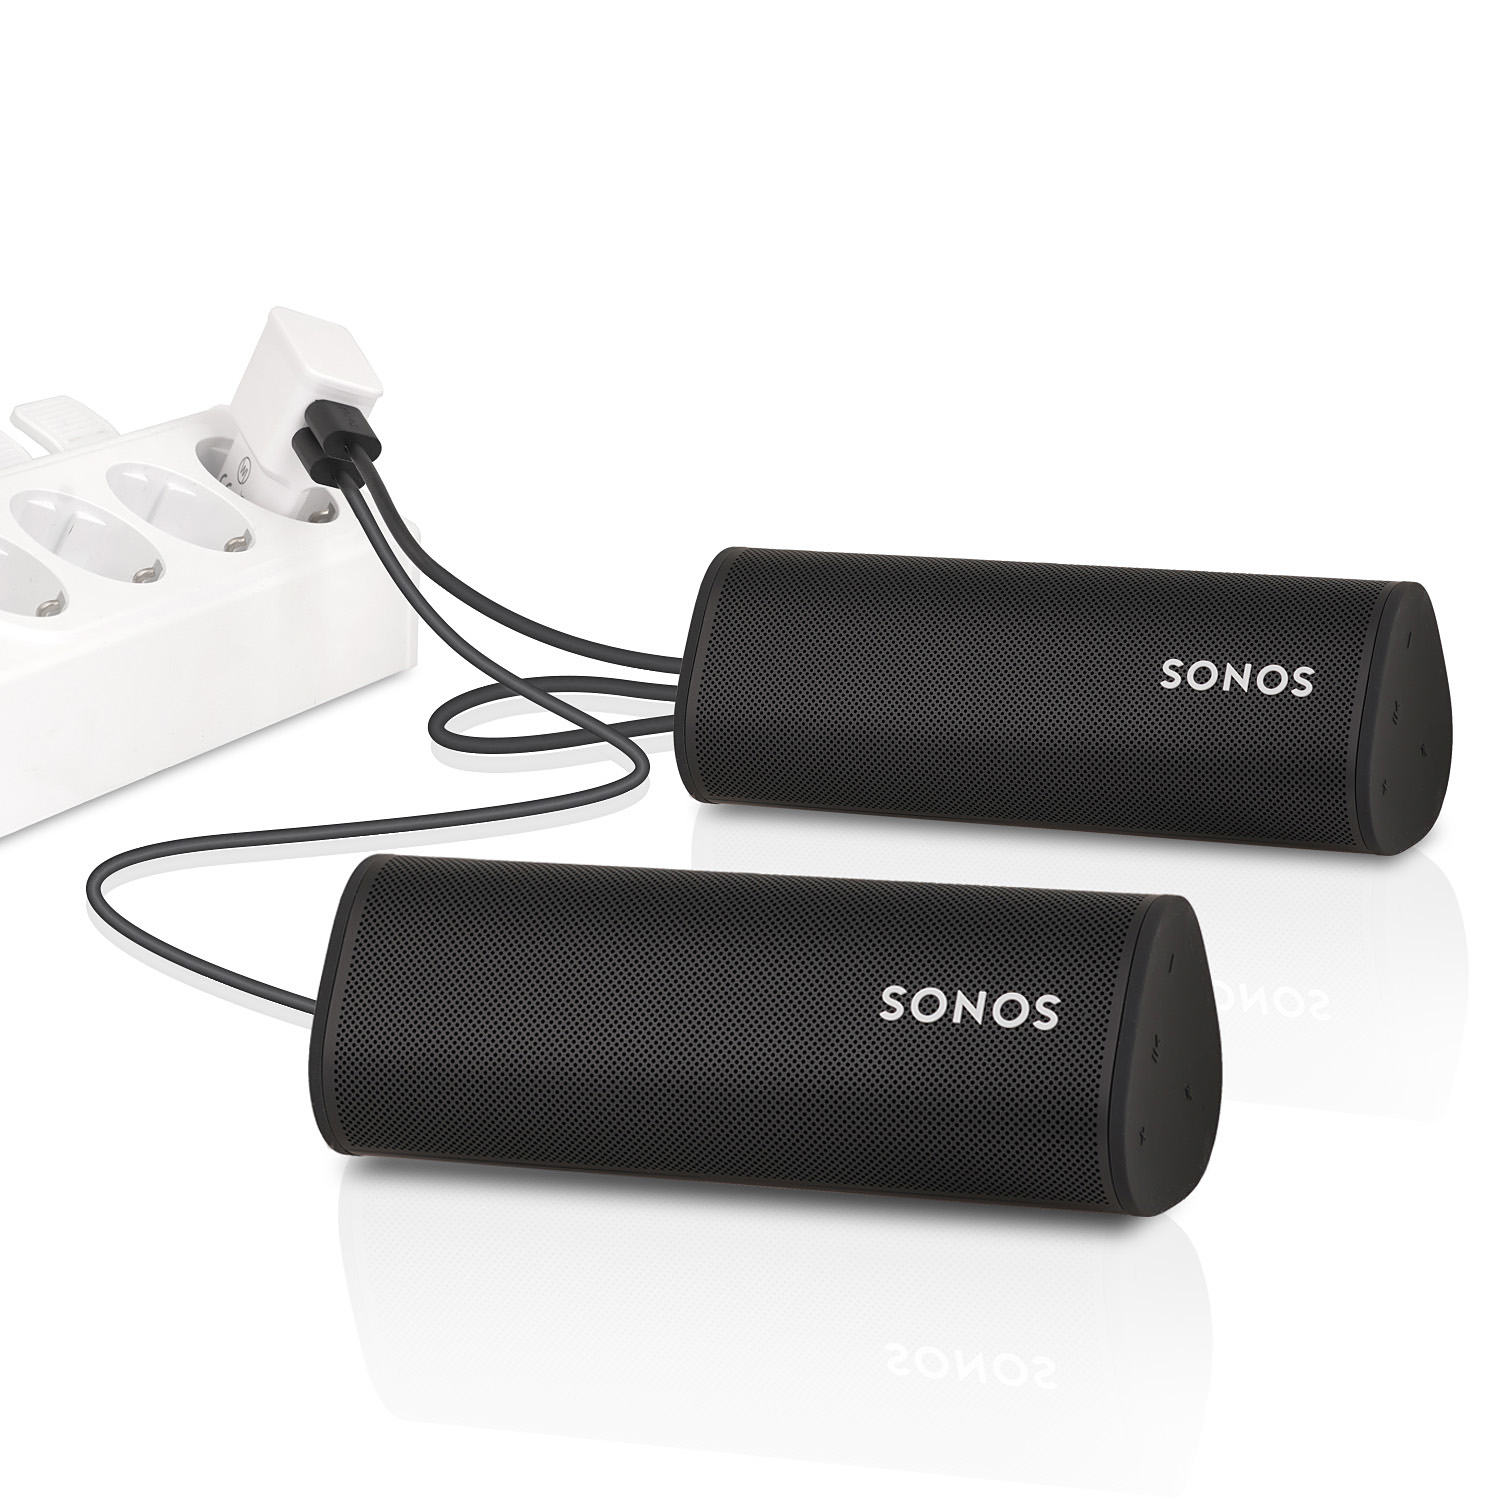 CHILI weiß Ladegerät Dual für Kabel 10W Roam, Dual 12W) USB-C Netzteil für Sonos (2.4A, WICKED USB auf Netzteil ersetzt USB-A USB